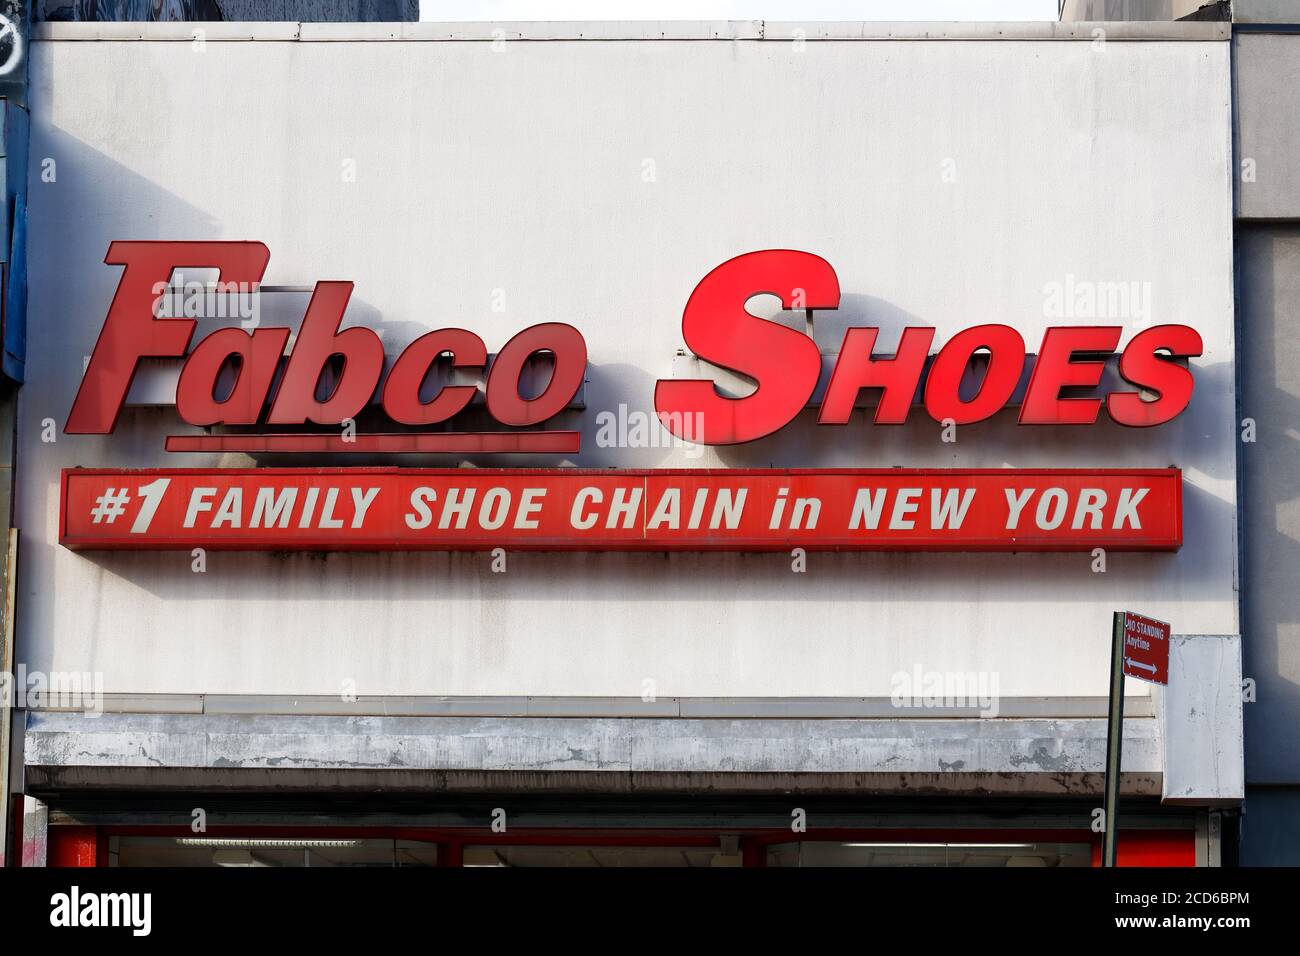 fabco shoes online